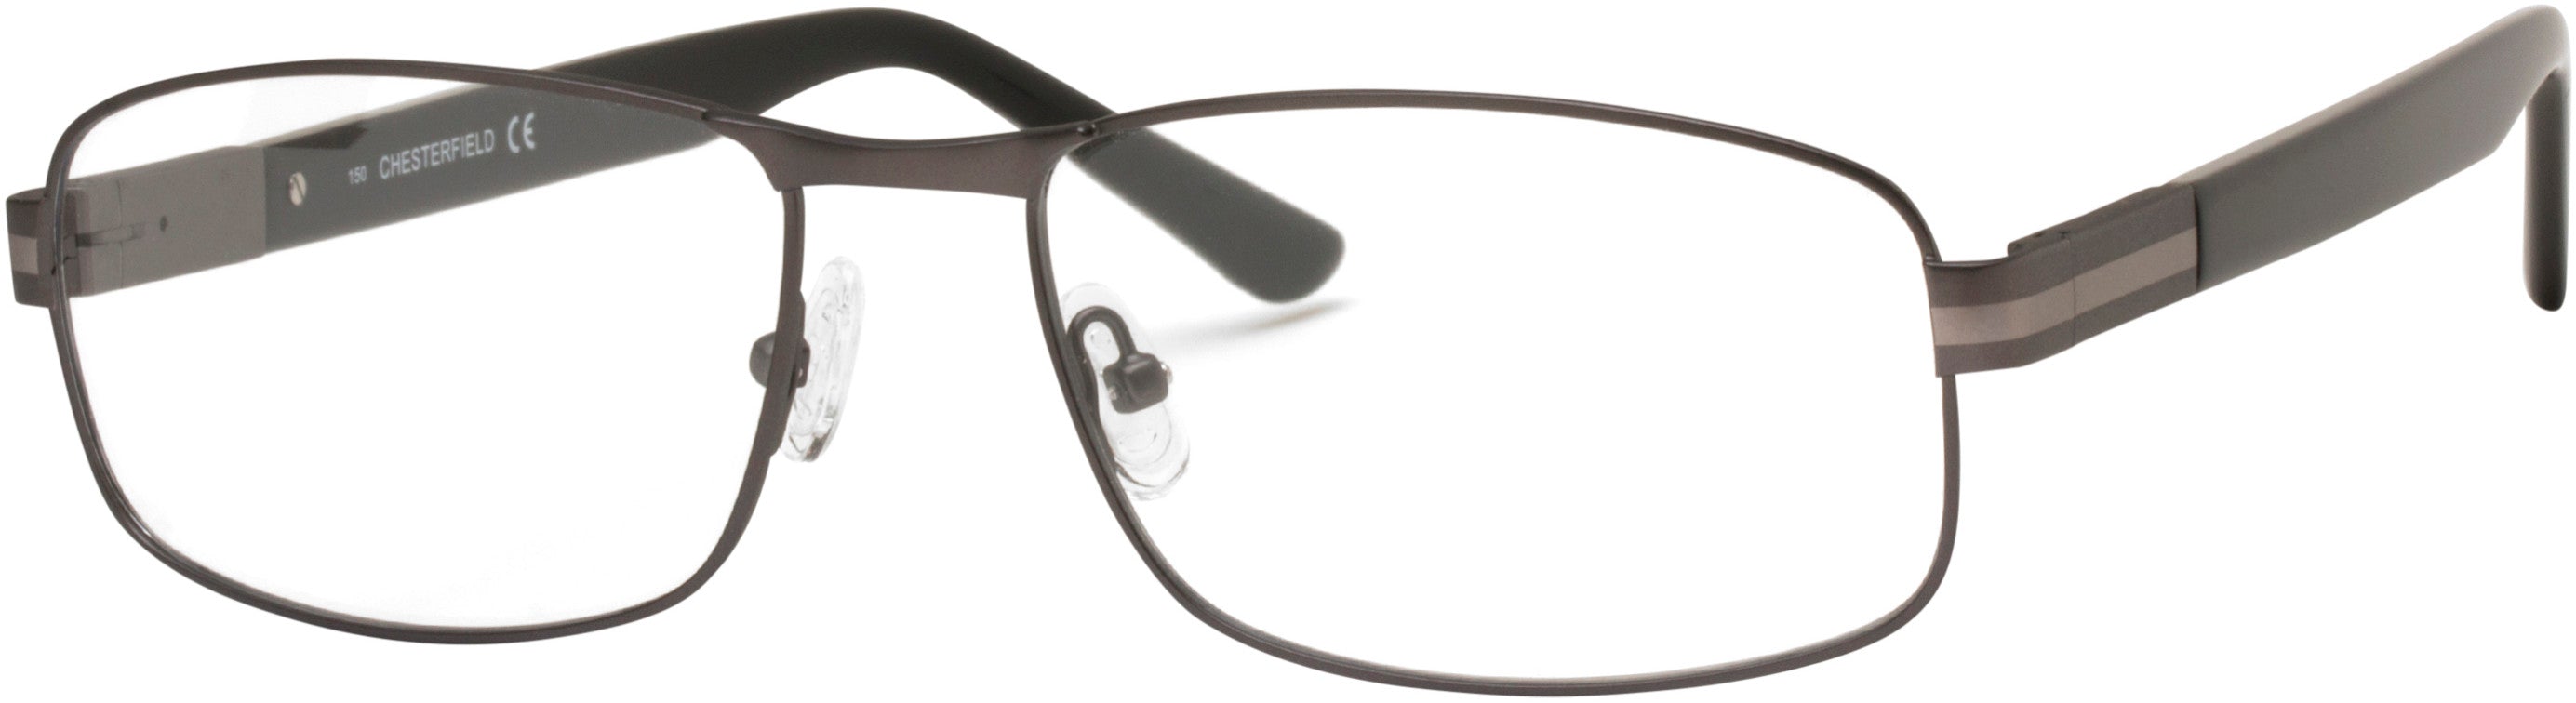  Chesterfield 61XL Rectangular Eyeglasses 0FRE-0FRE  Matte Gray (00 Demo Lens)